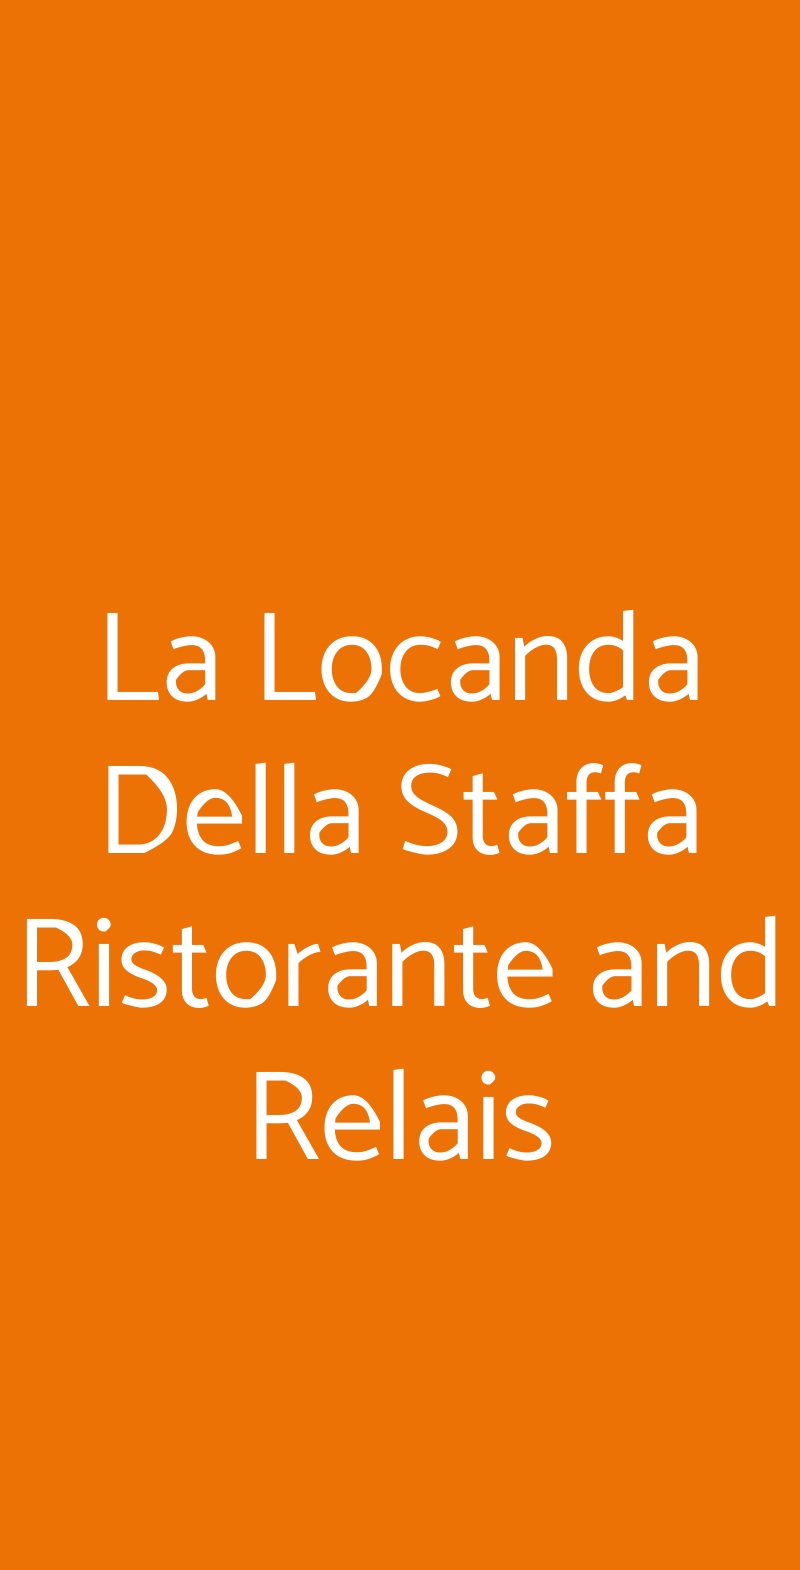 La Locanda Della Staffa Ristorante and Relais Marano Ticino menù 1 pagina